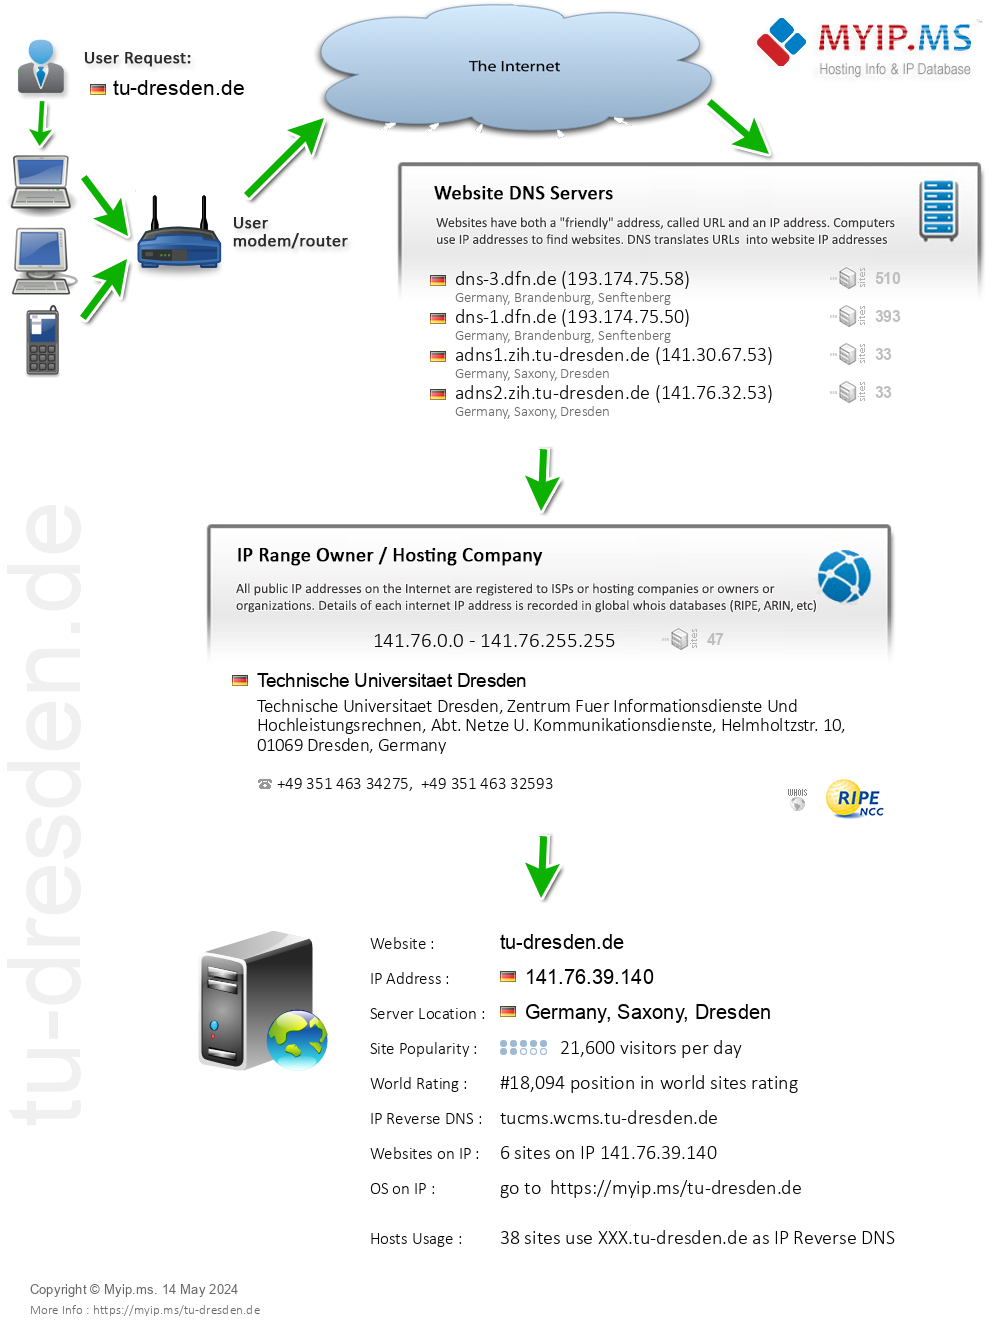 Tu-dresden.de - Website Hosting Visual IP Diagram